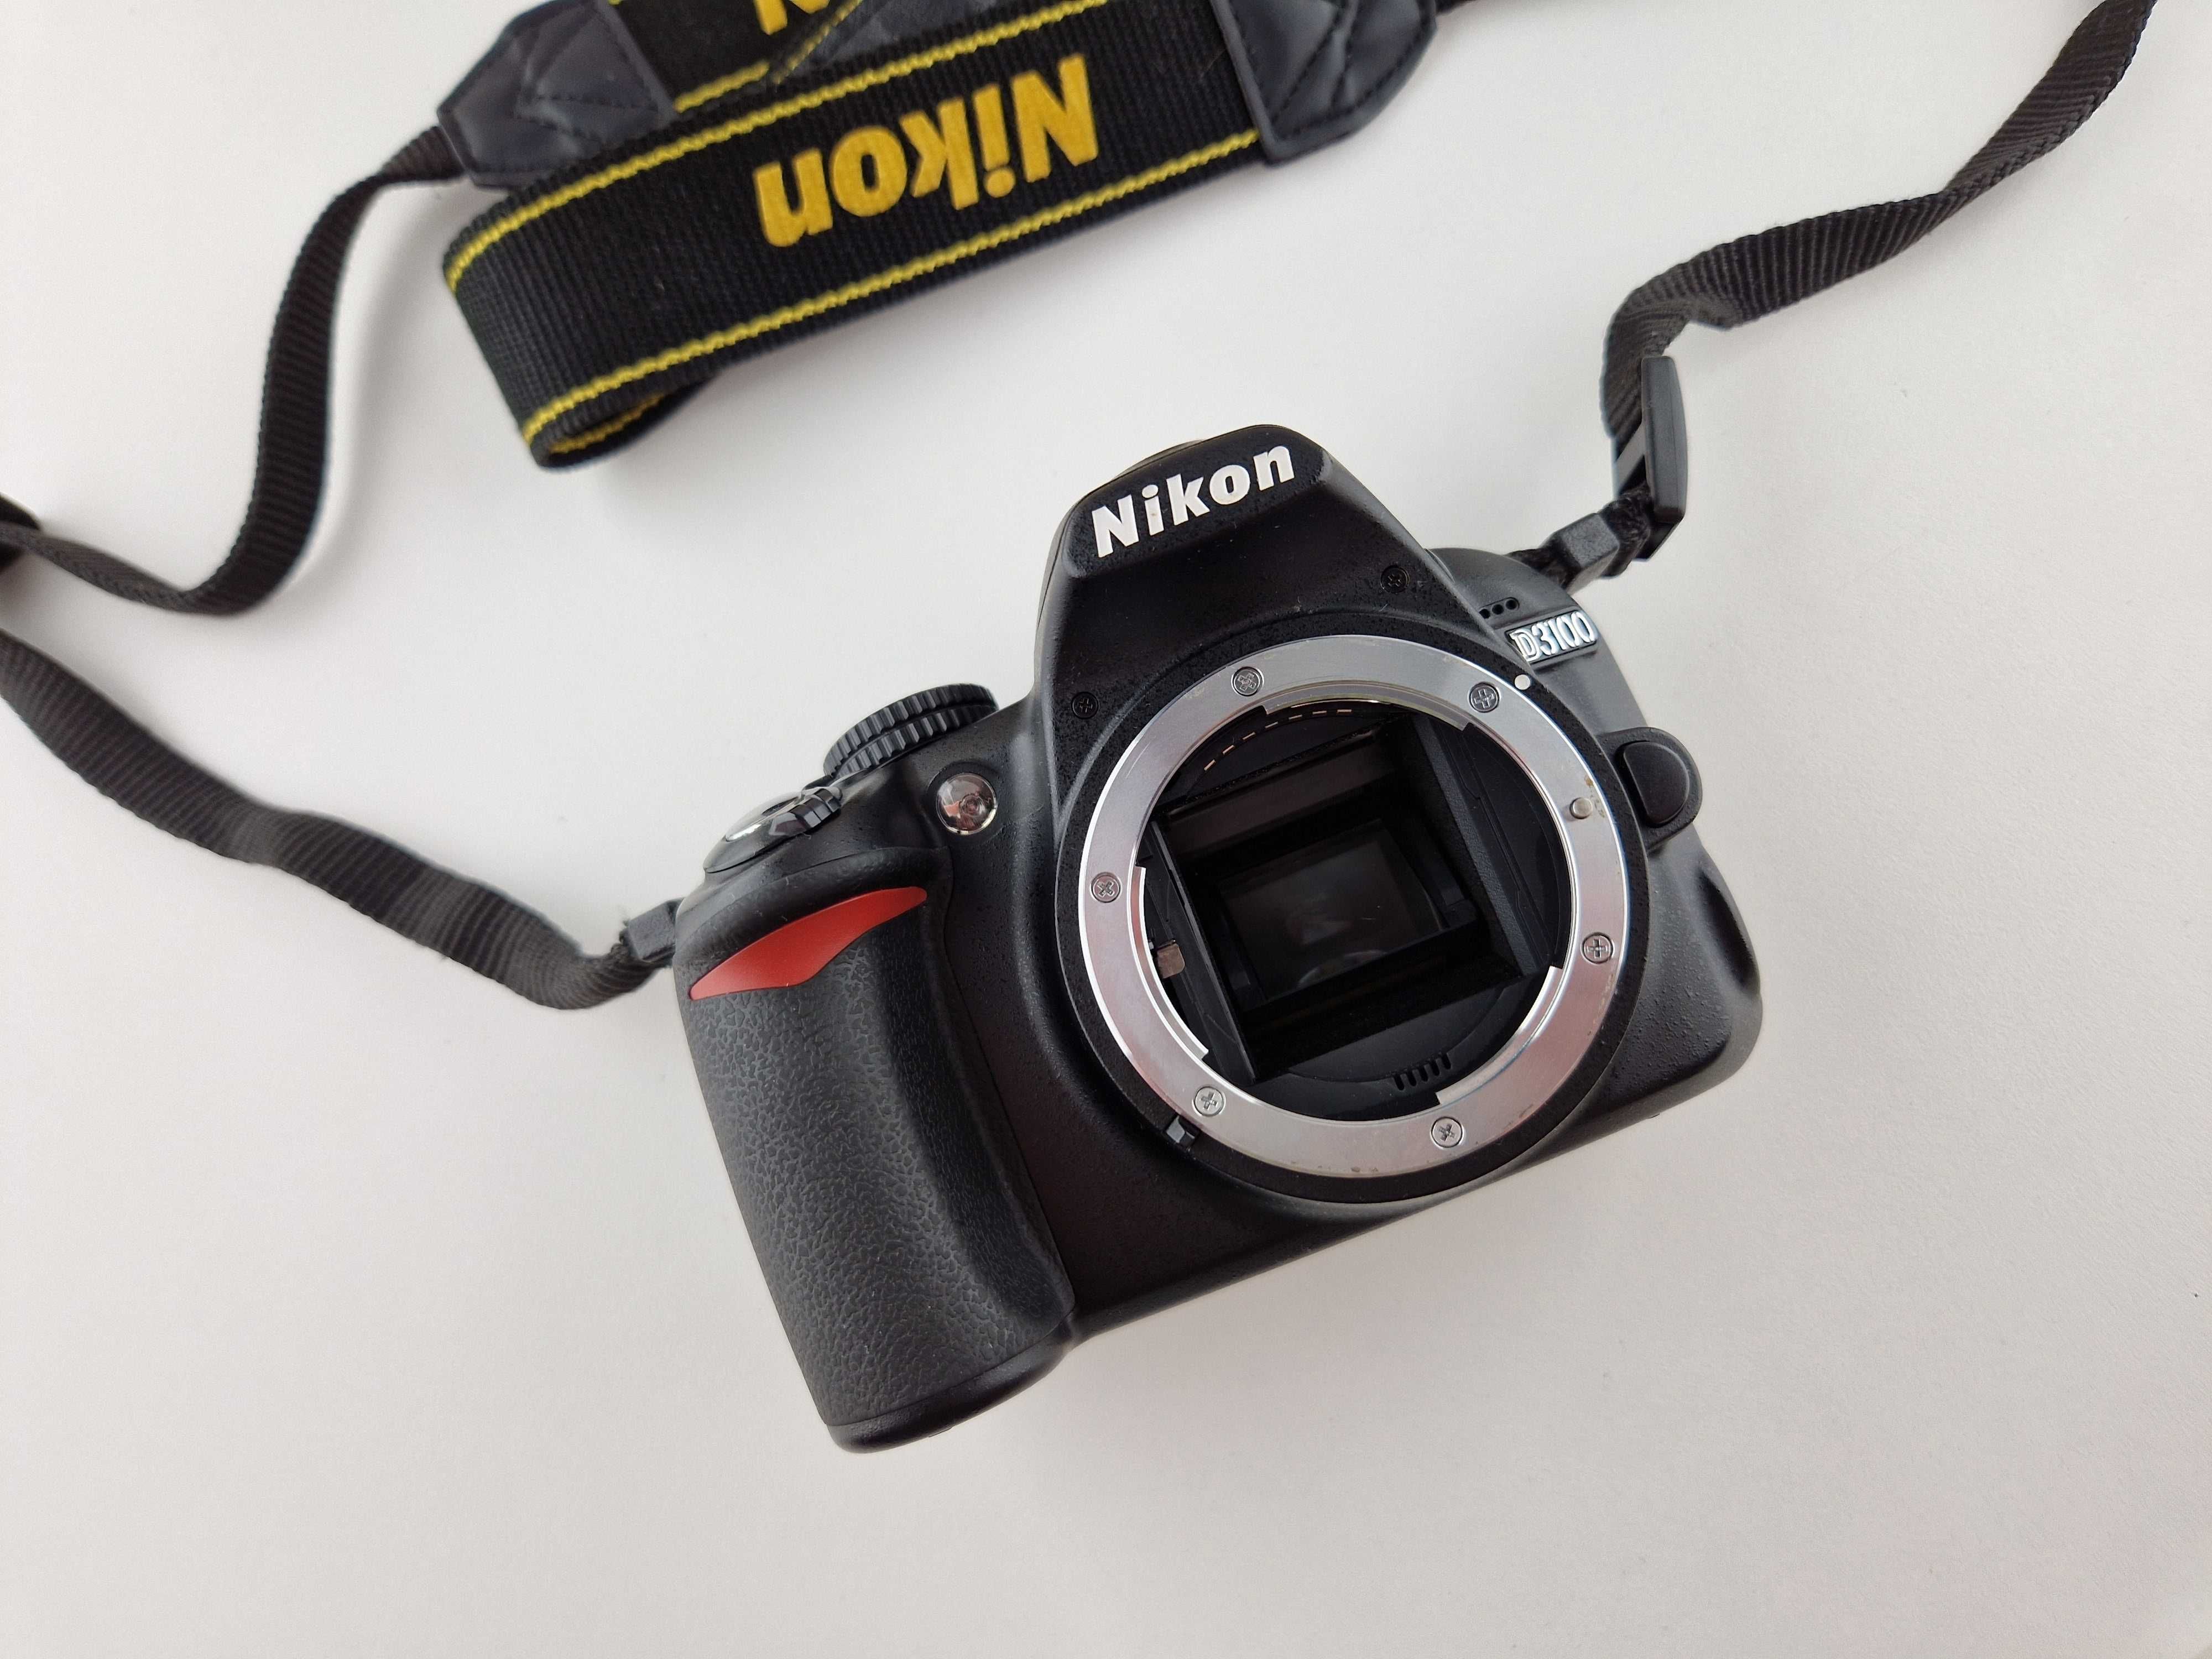 .Aparat Nikon D3100 body + 16GB - przebieg 18 tys. zdjęć - jak nowy!